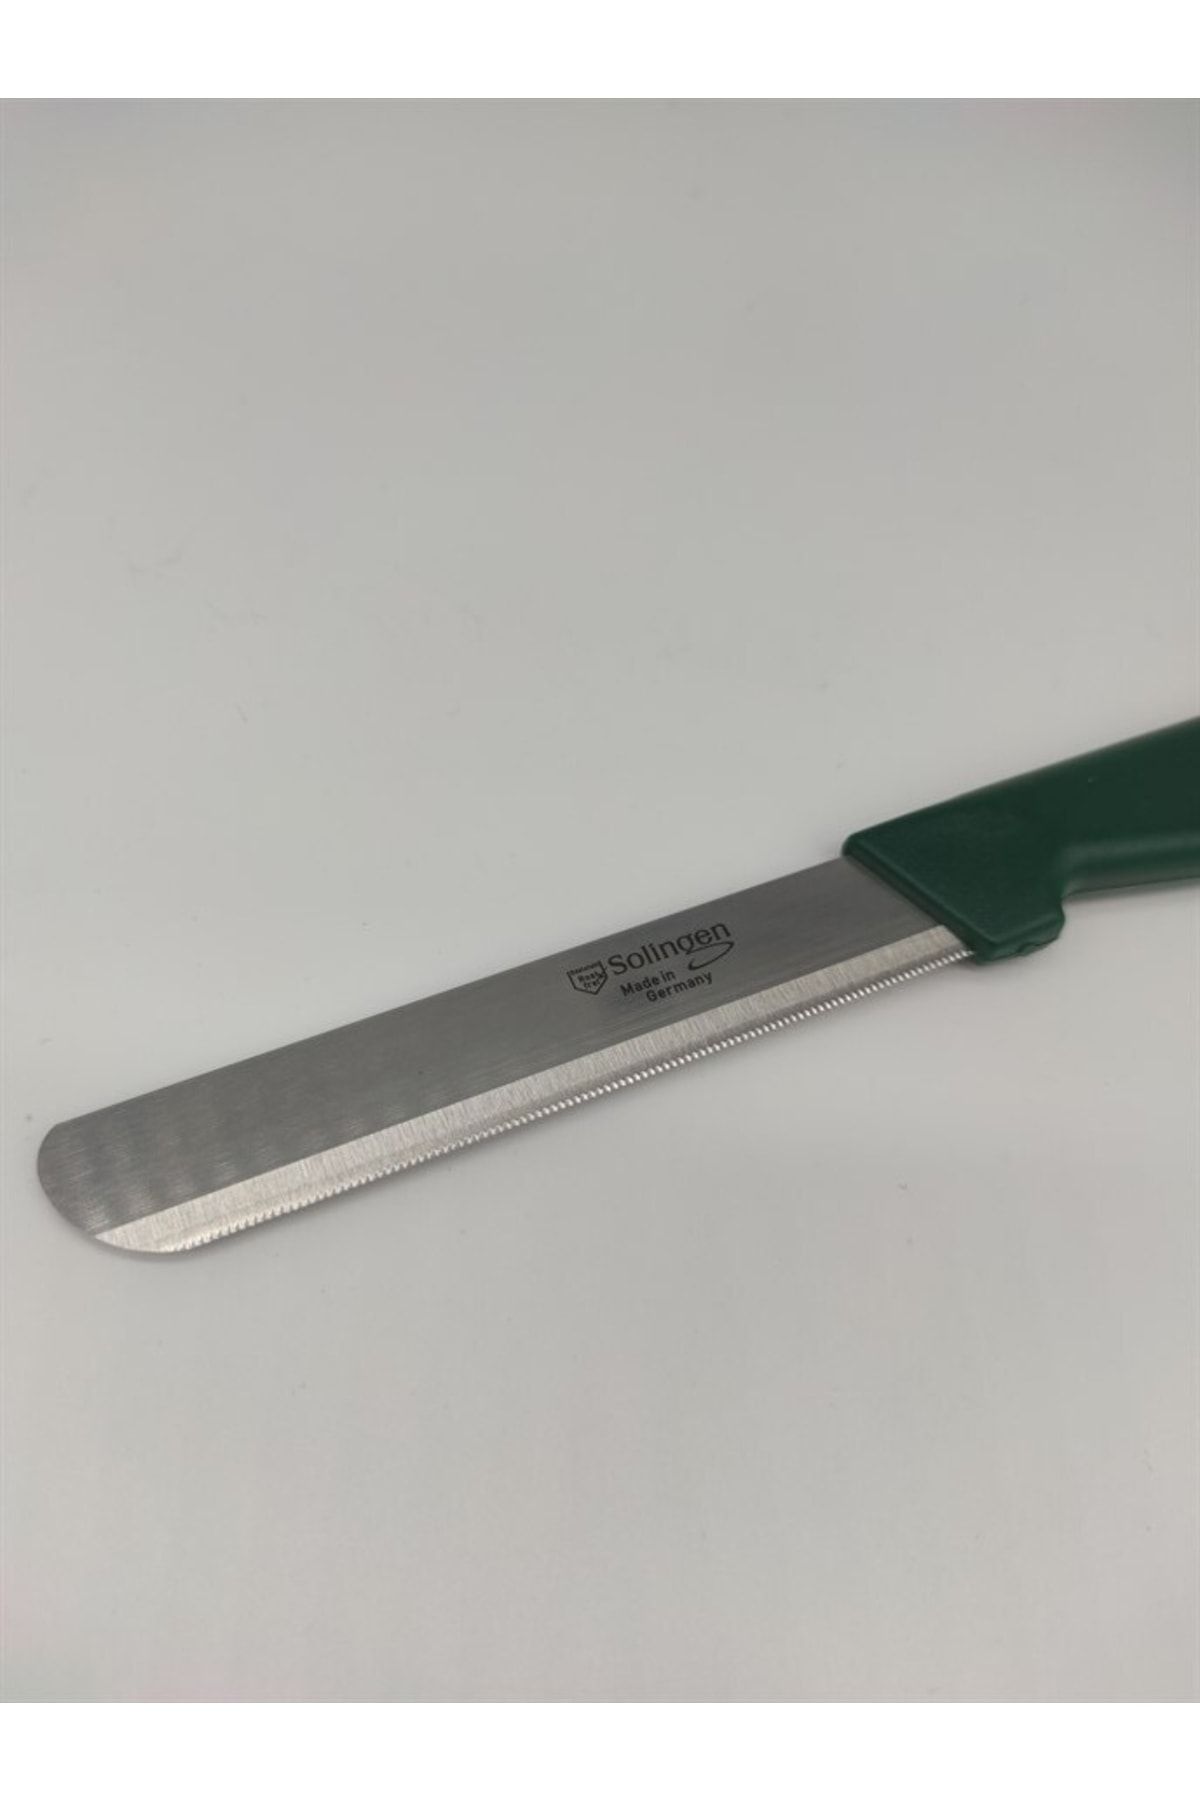 Solingen Yeşil Renk Sebze Ve Doğrama Bıçağı